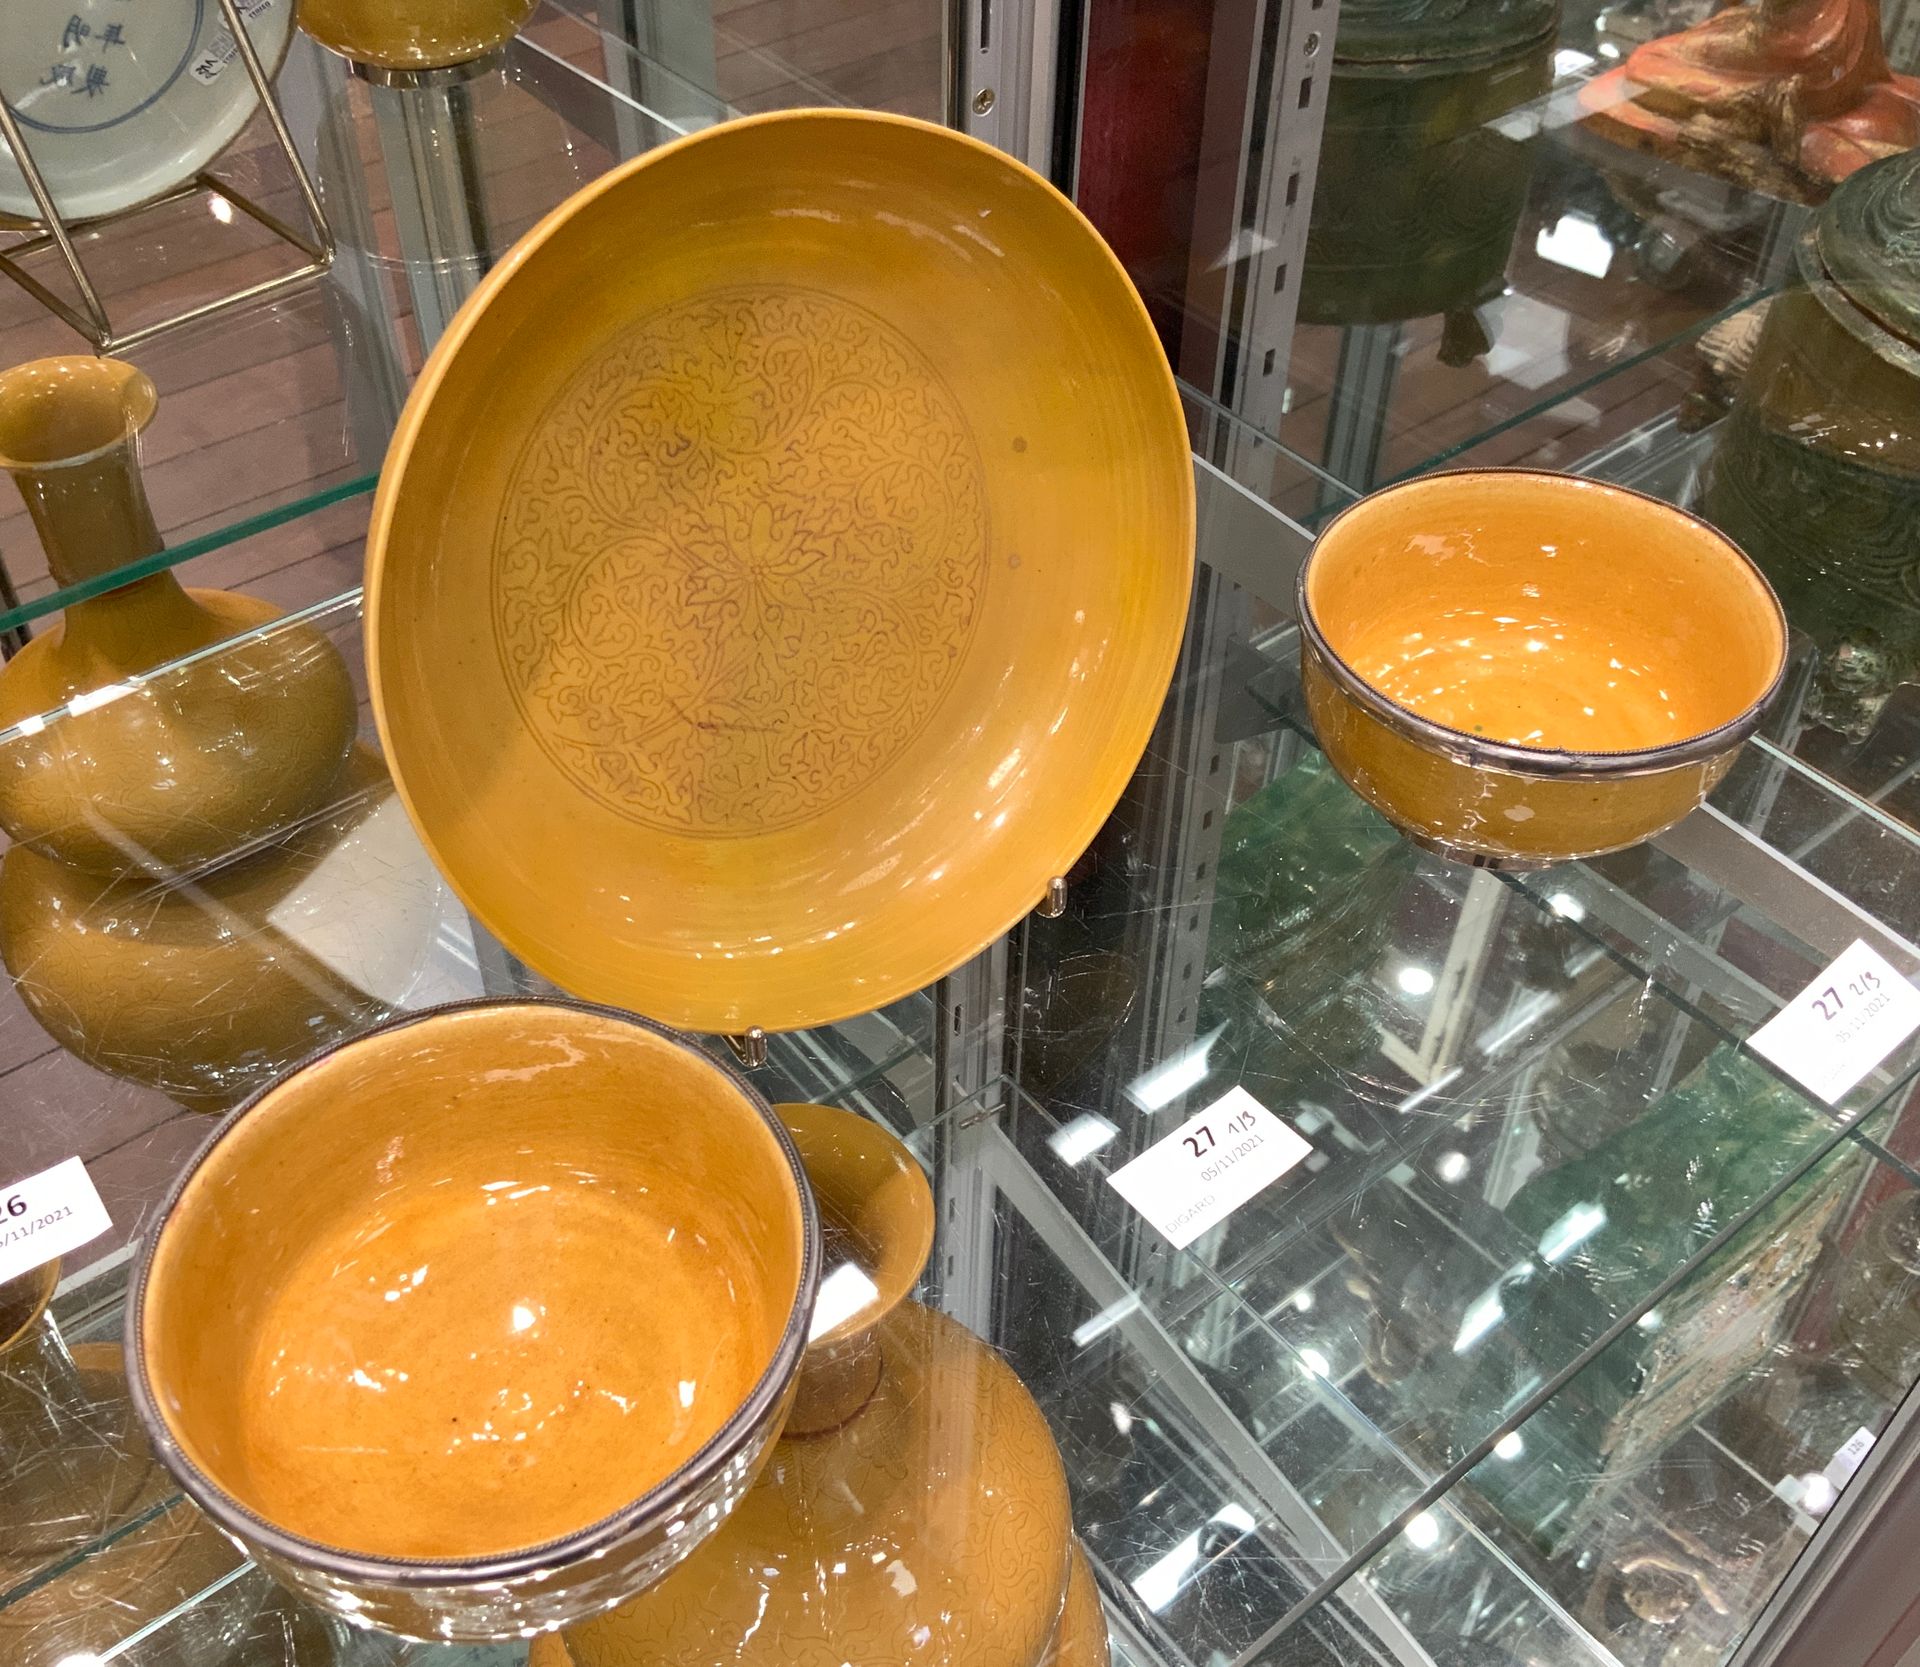 Null 
一件包括黄釉瓷碗，釉下刻有莲花和叶子的装饰，有成化的天书款；以及一对黄釉小碗。 

中国，清朝时期。

直径18和10.5厘米。

(恢复到大碗中)